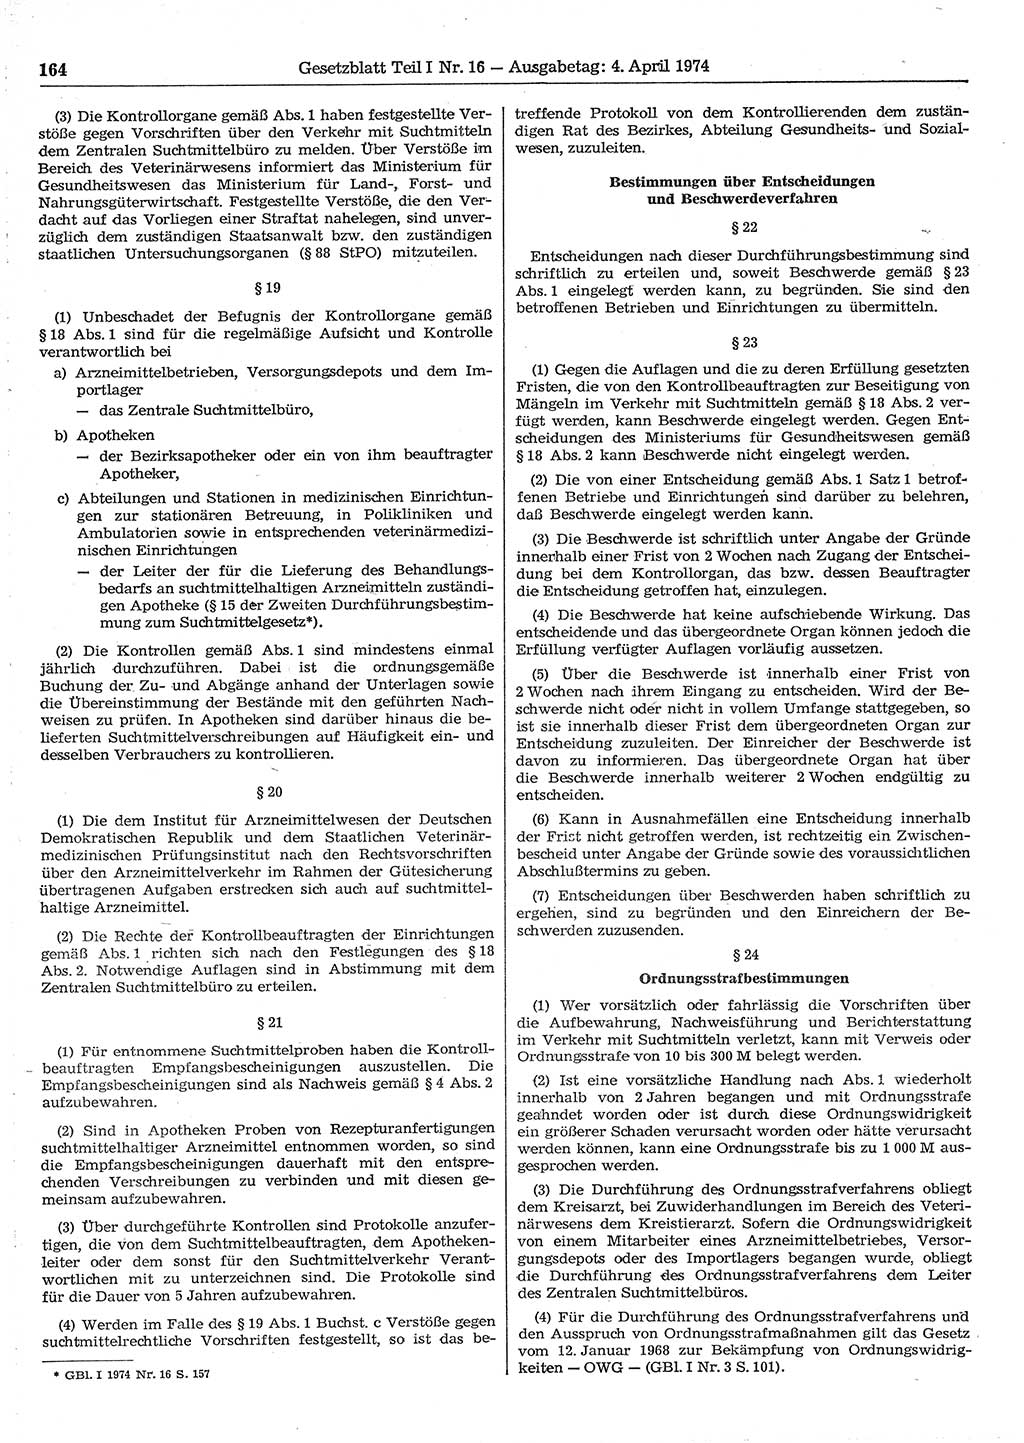 Gesetzblatt (GBl.) der Deutschen Demokratischen Republik (DDR) Teil Ⅰ 1974, Seite 164 (GBl. DDR Ⅰ 1974, S. 164)